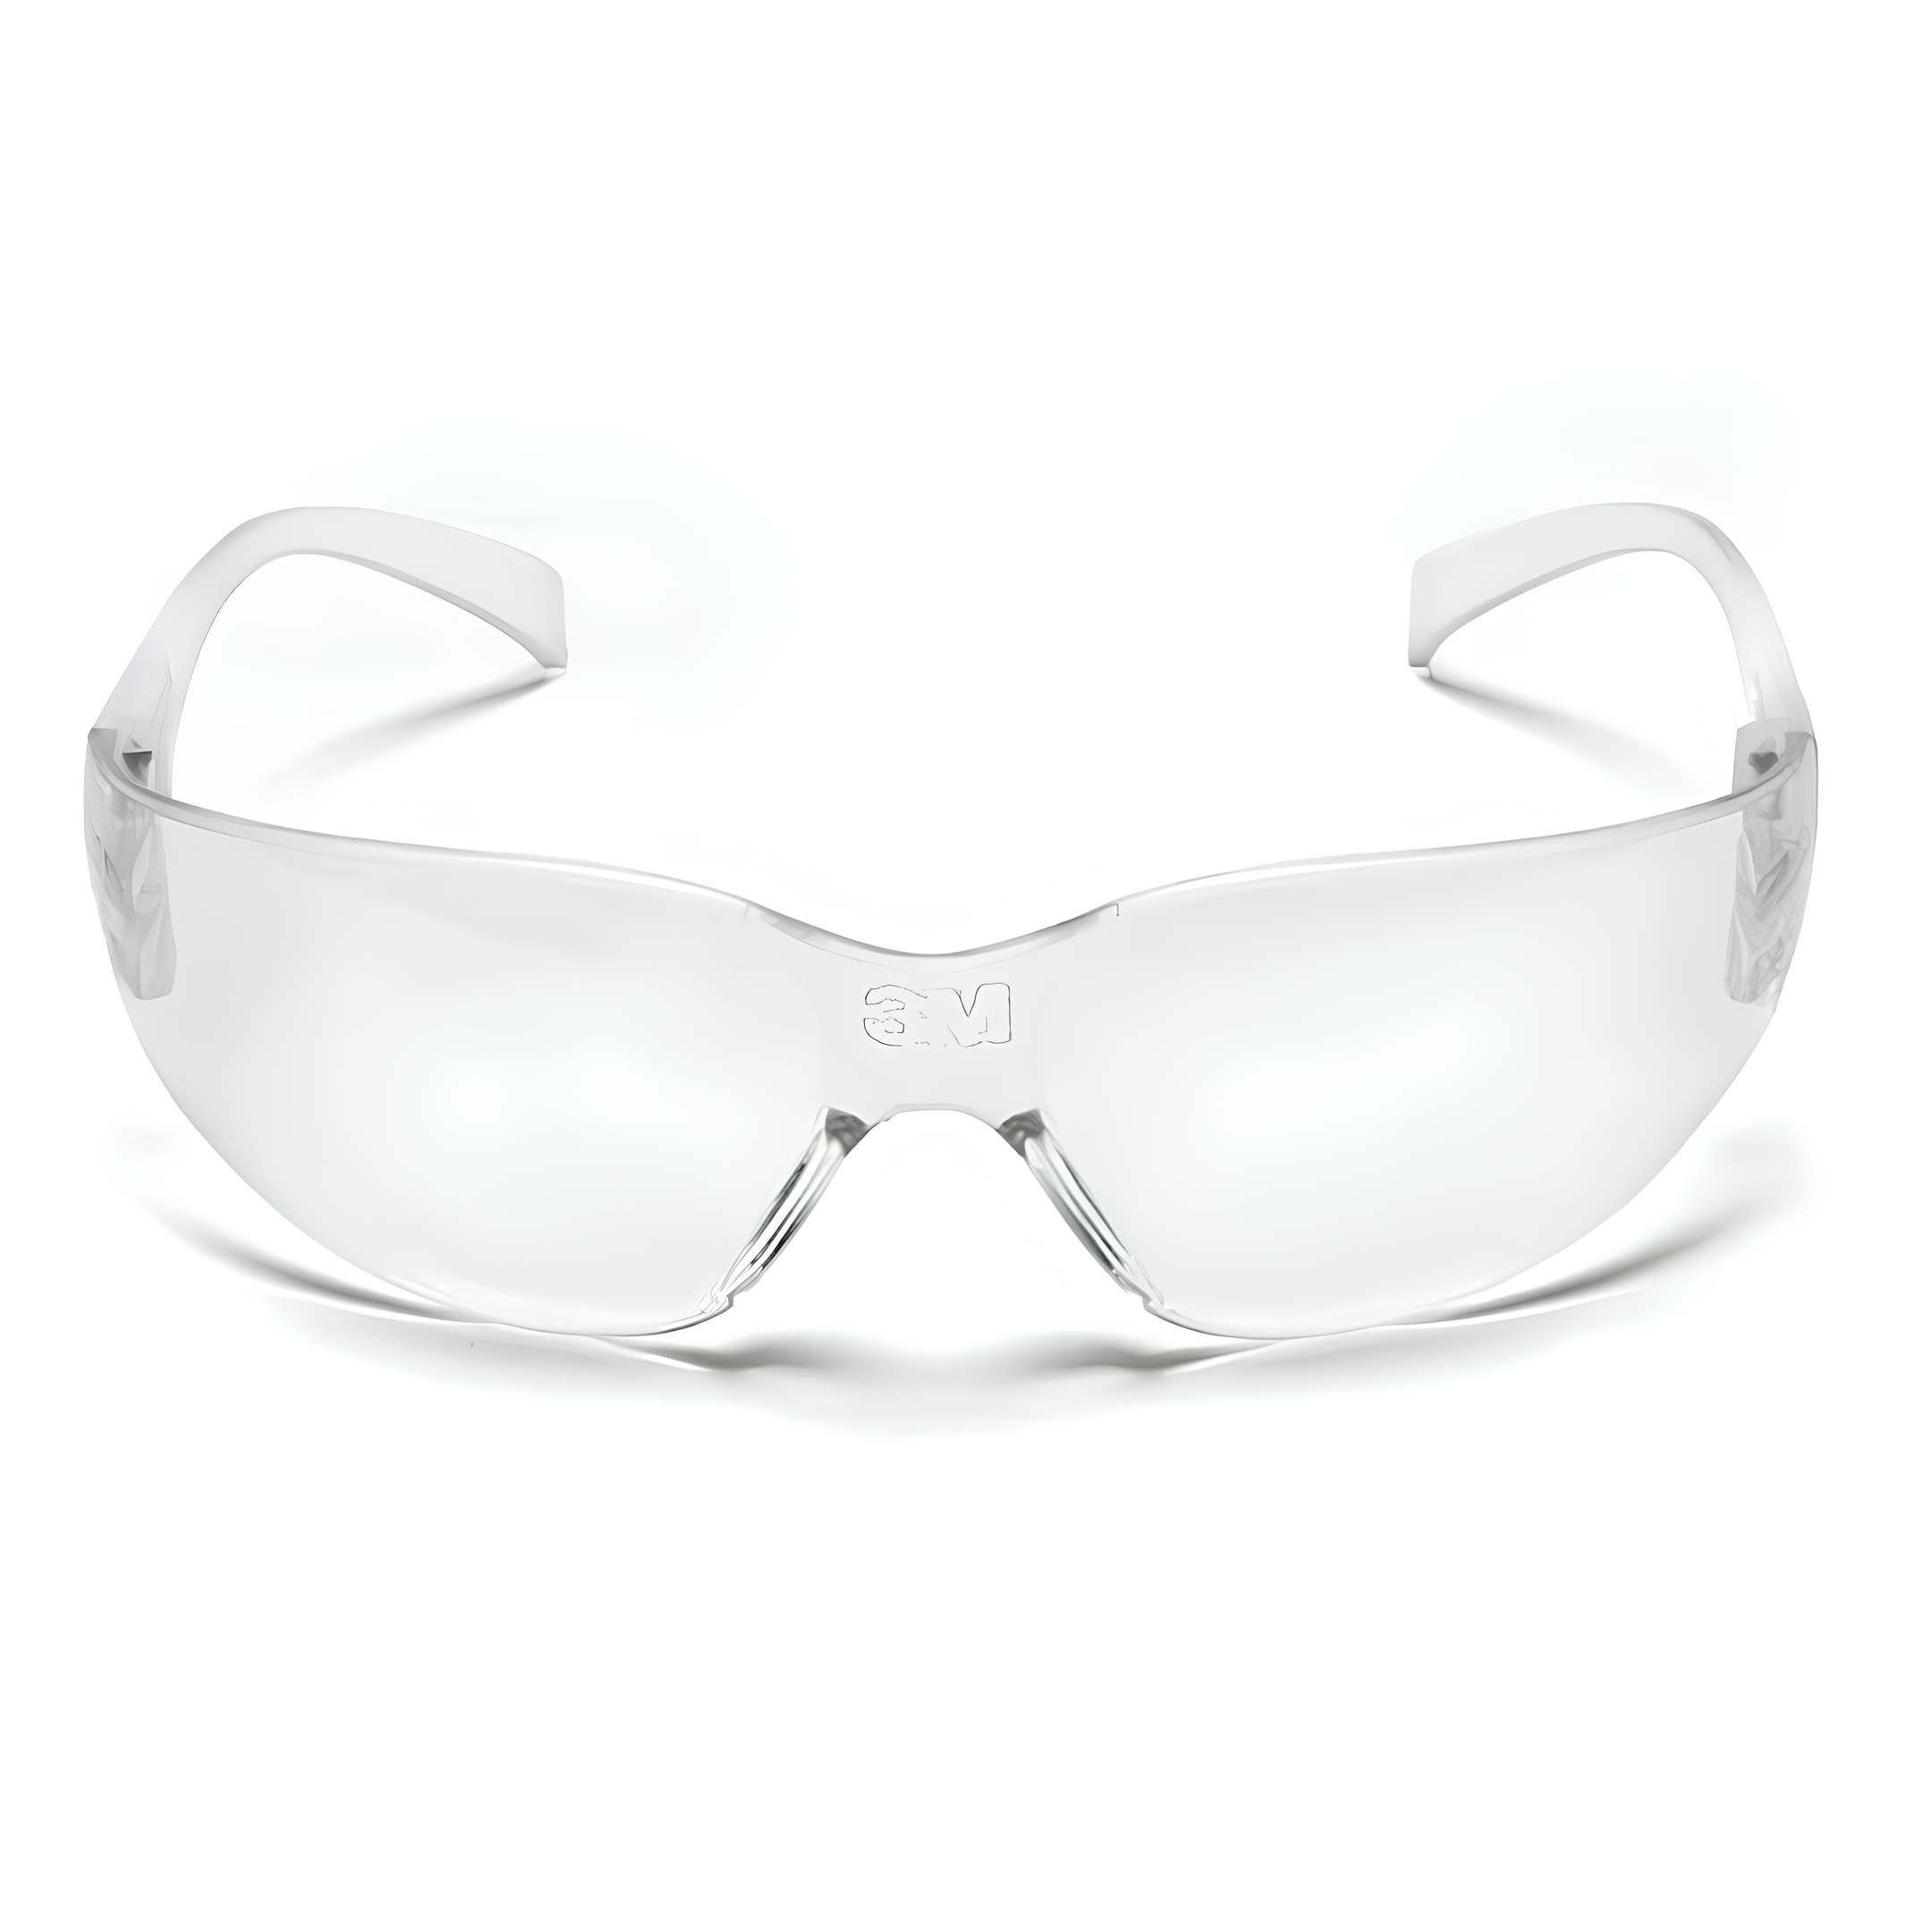 Oculos de Proteção Virtua Lente Transparente HB004662944 3M